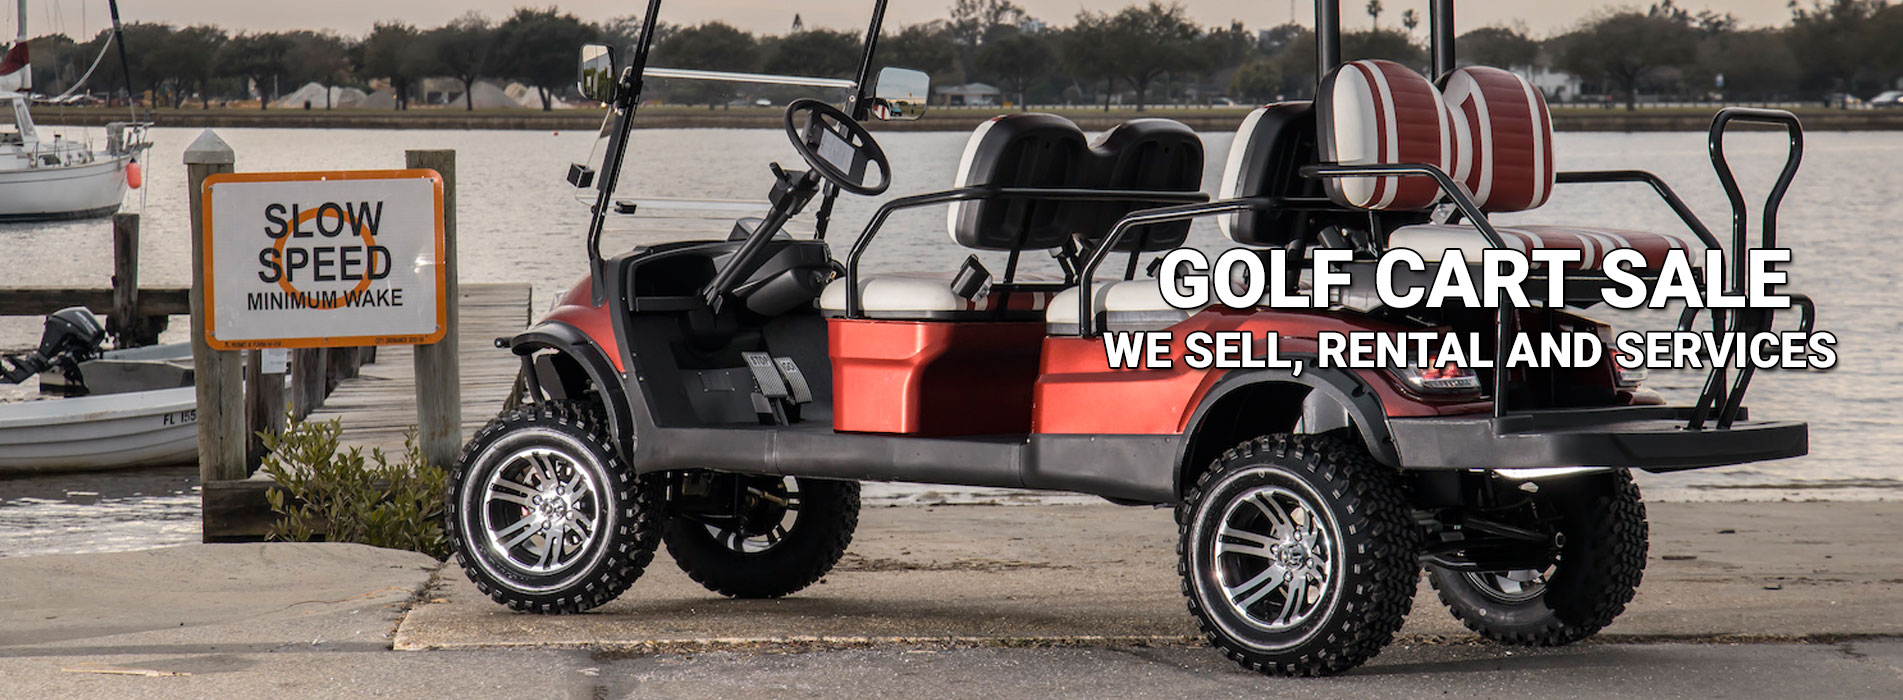 Golf cart sale